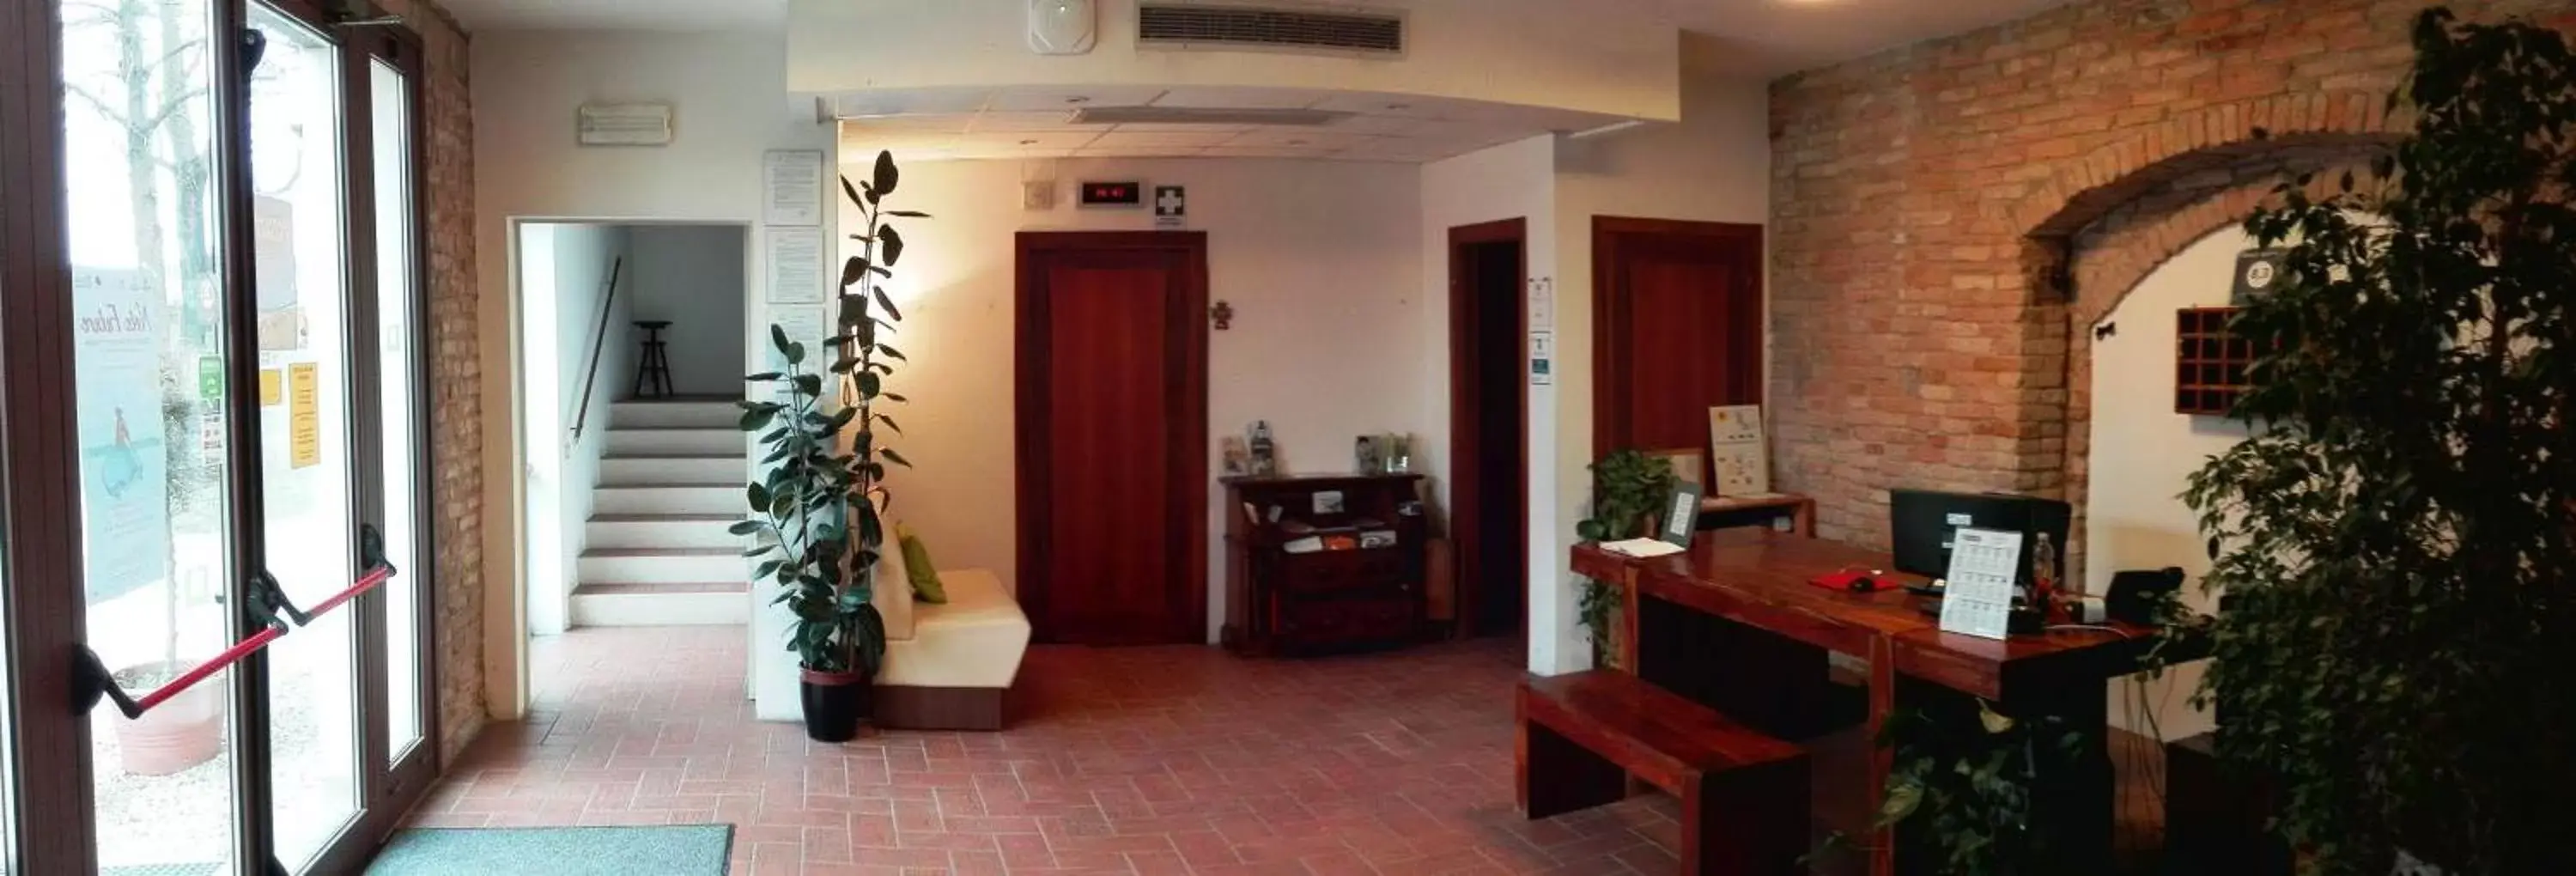 Communal lounge/ TV room, Dining Area in Hotel Casa a Colori Venezia